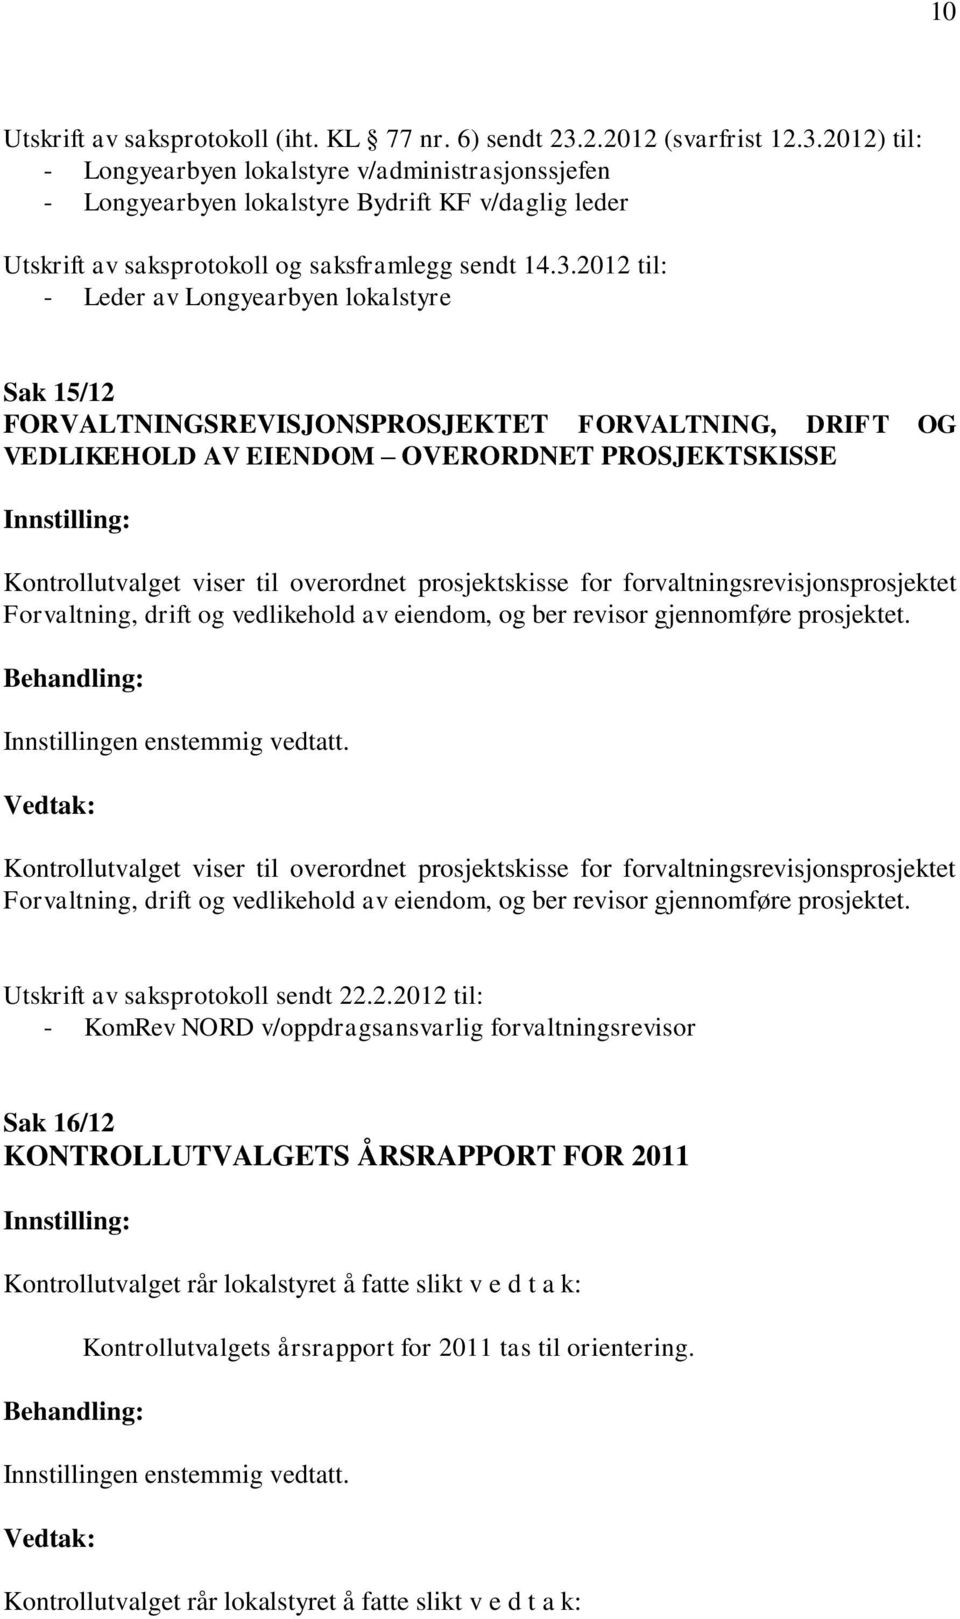 2012) til: - Longyearbyen lokalstyre v/administrasjonssjefen - Longyearbyen lokalstyre Bydrift KF v/daglig leder Utskrift av saksprotokoll og saksframlegg sendt 14.3.